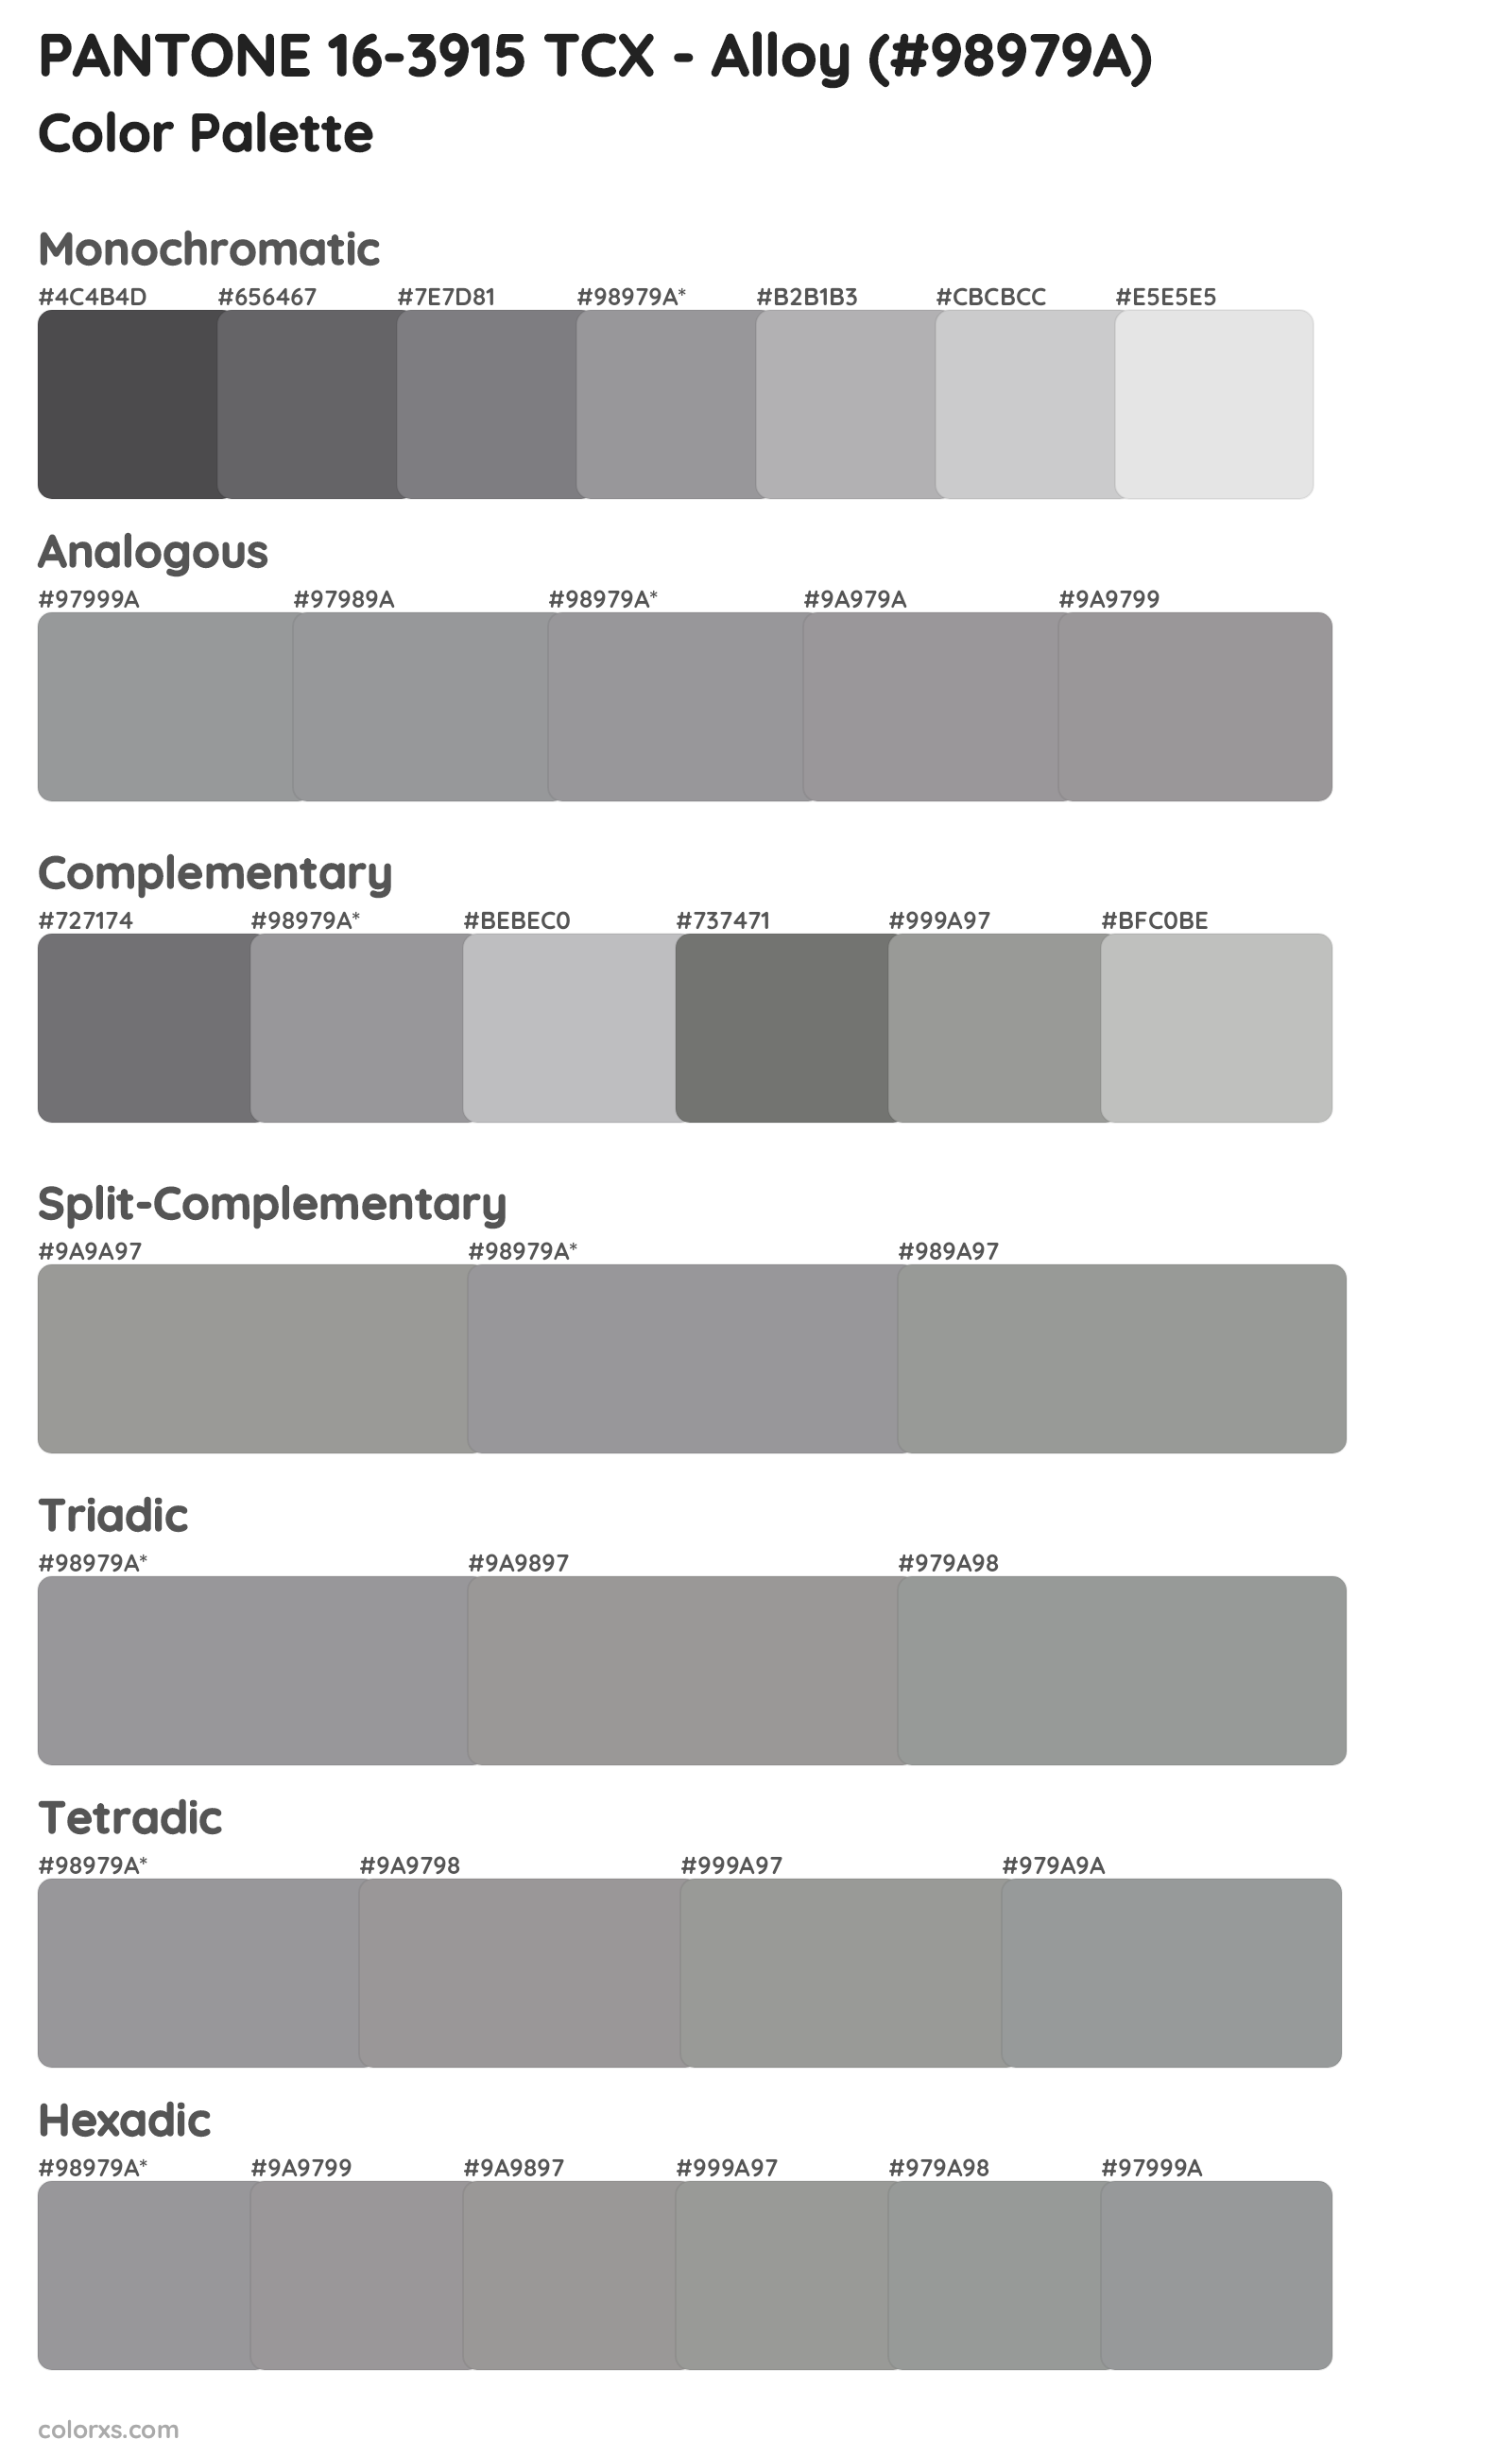 PANTONE 16-3915 TCX - Alloy Color Scheme Palettes